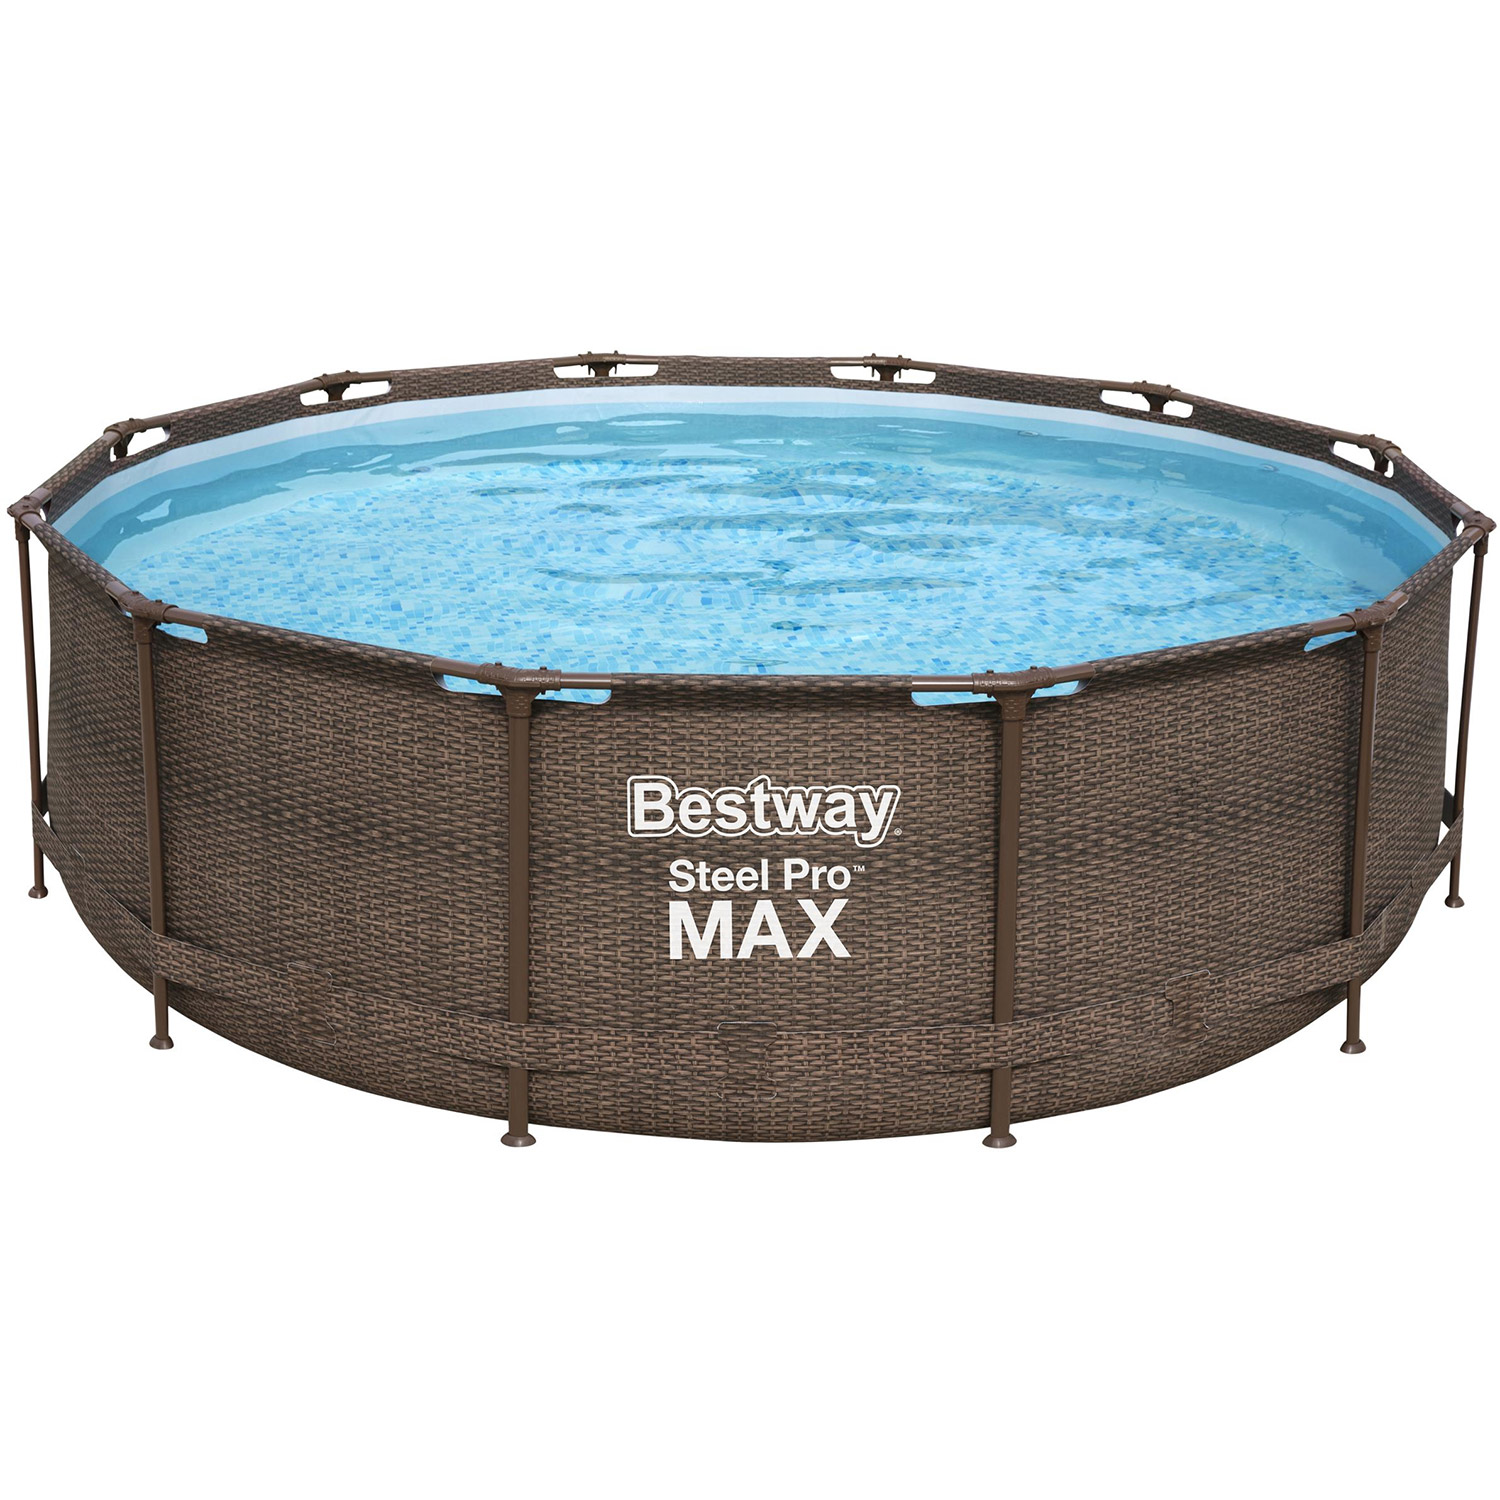 Bestway swimming pool Steel Pro Max rattan 366 cm